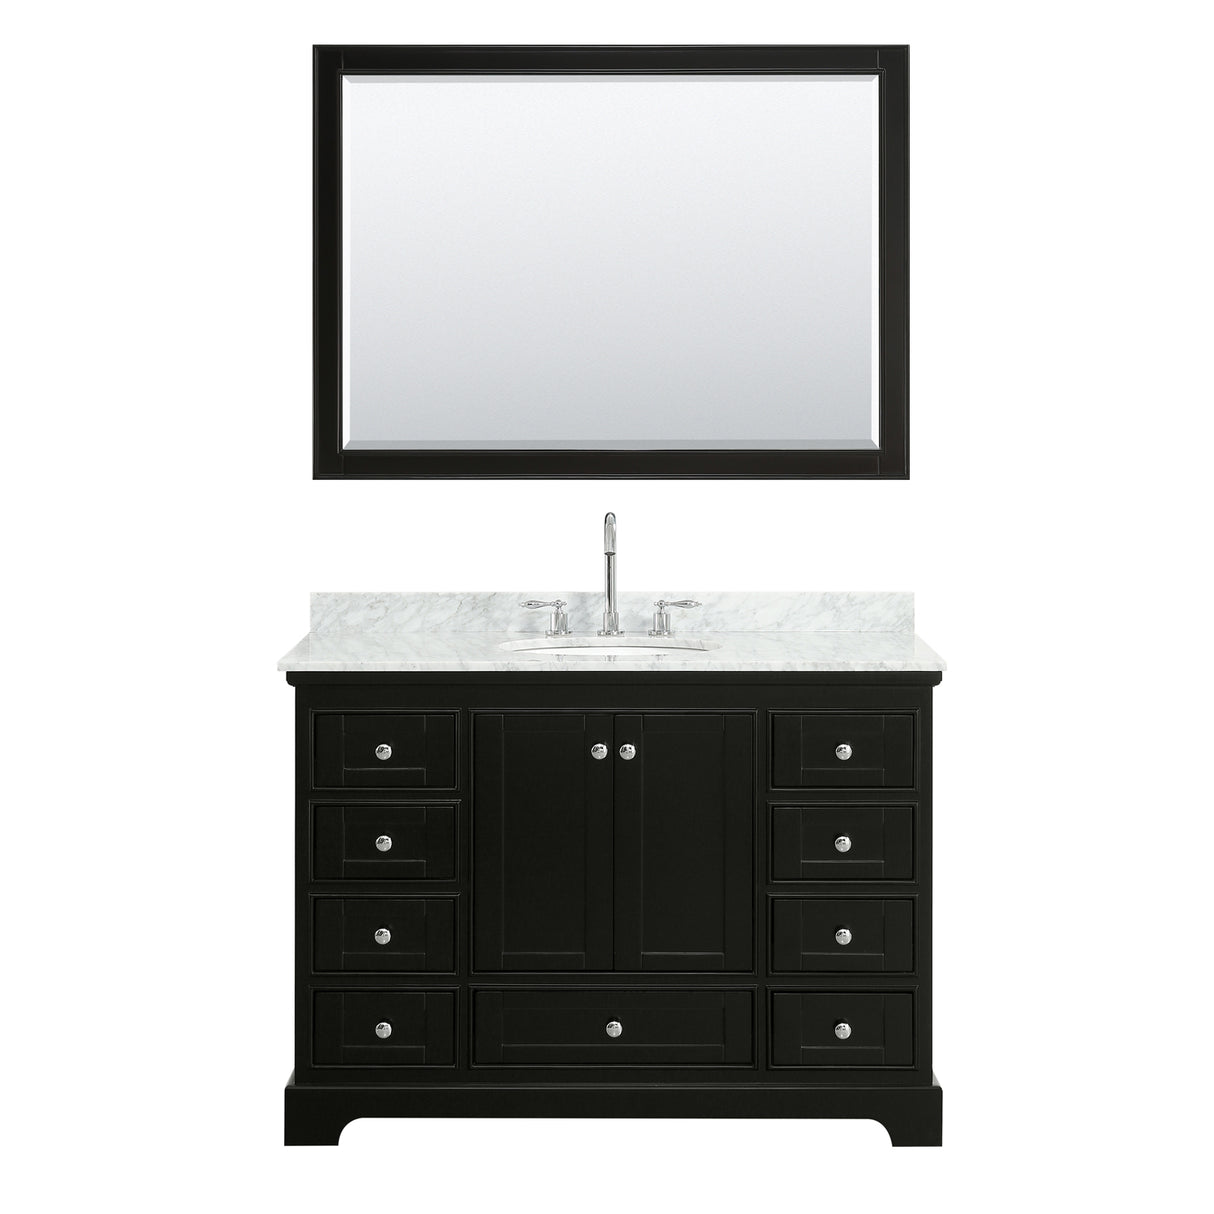 Deborah 48 Inch Single Bathroom Vanity in Dark Espresso White Carrara Marble Countertop Undermount Oval Sink and 46 Inch Mirror